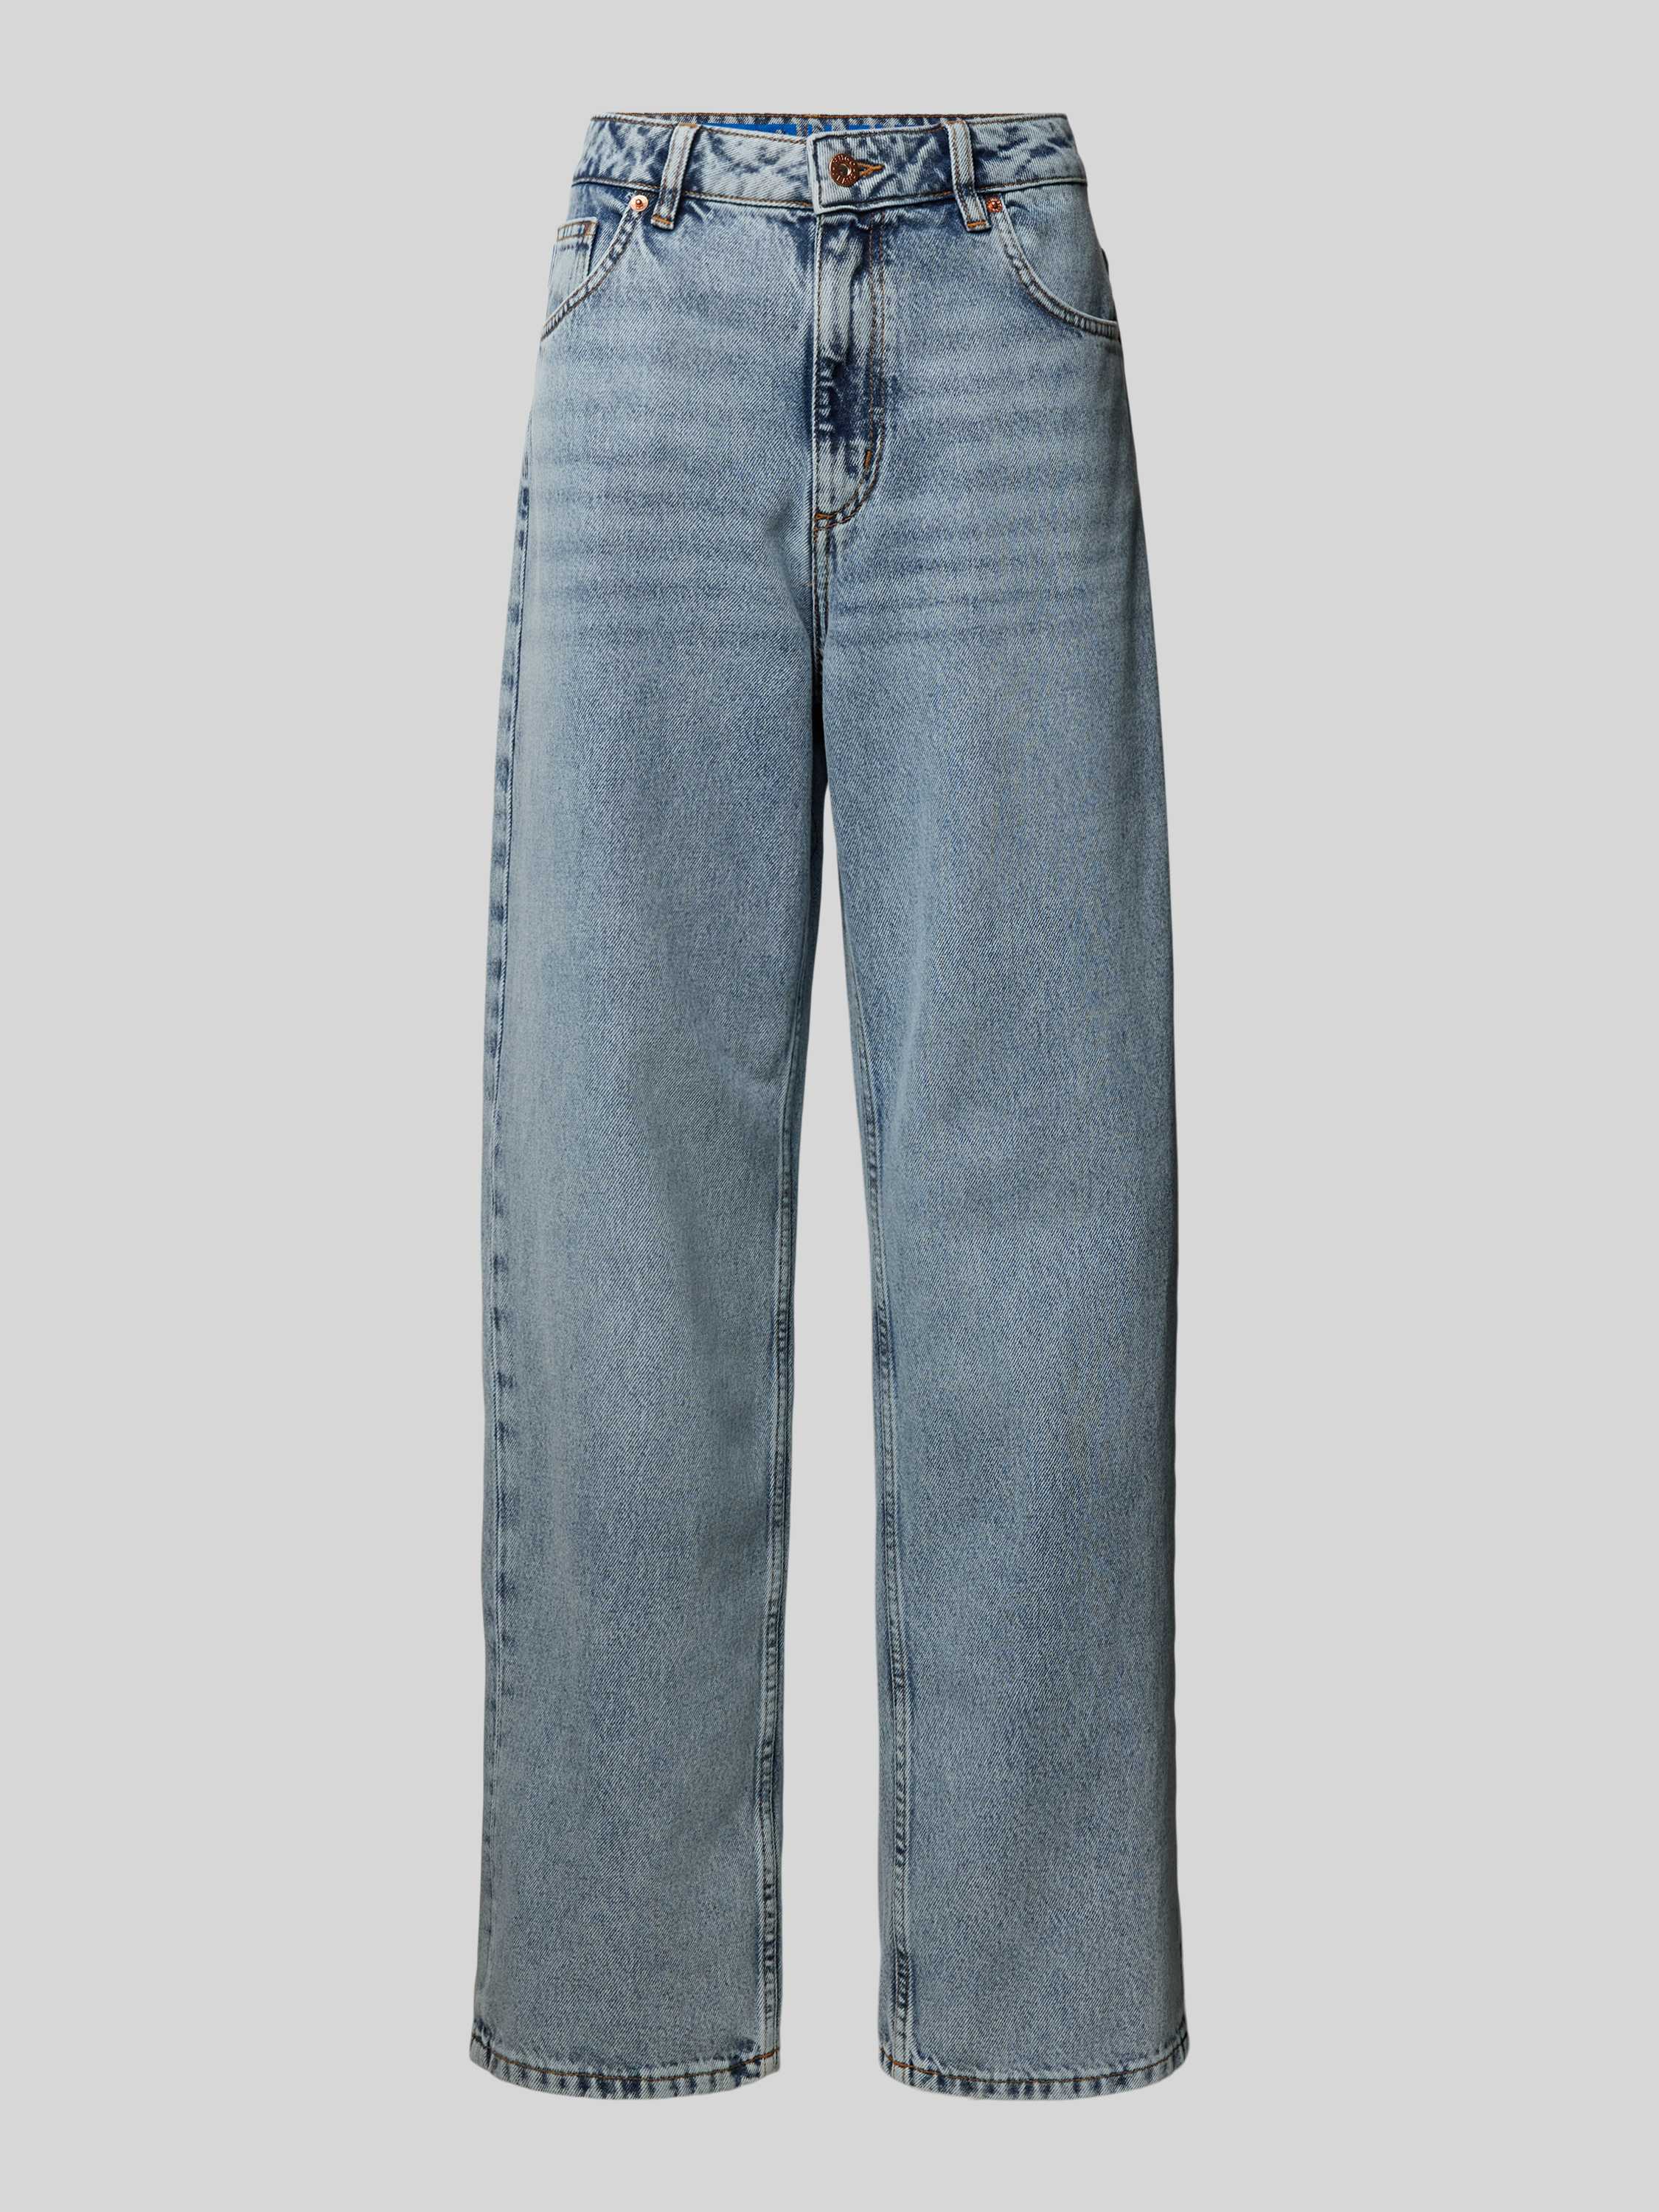 Jeans mit Gesäßtaschen Modell 'Leni'